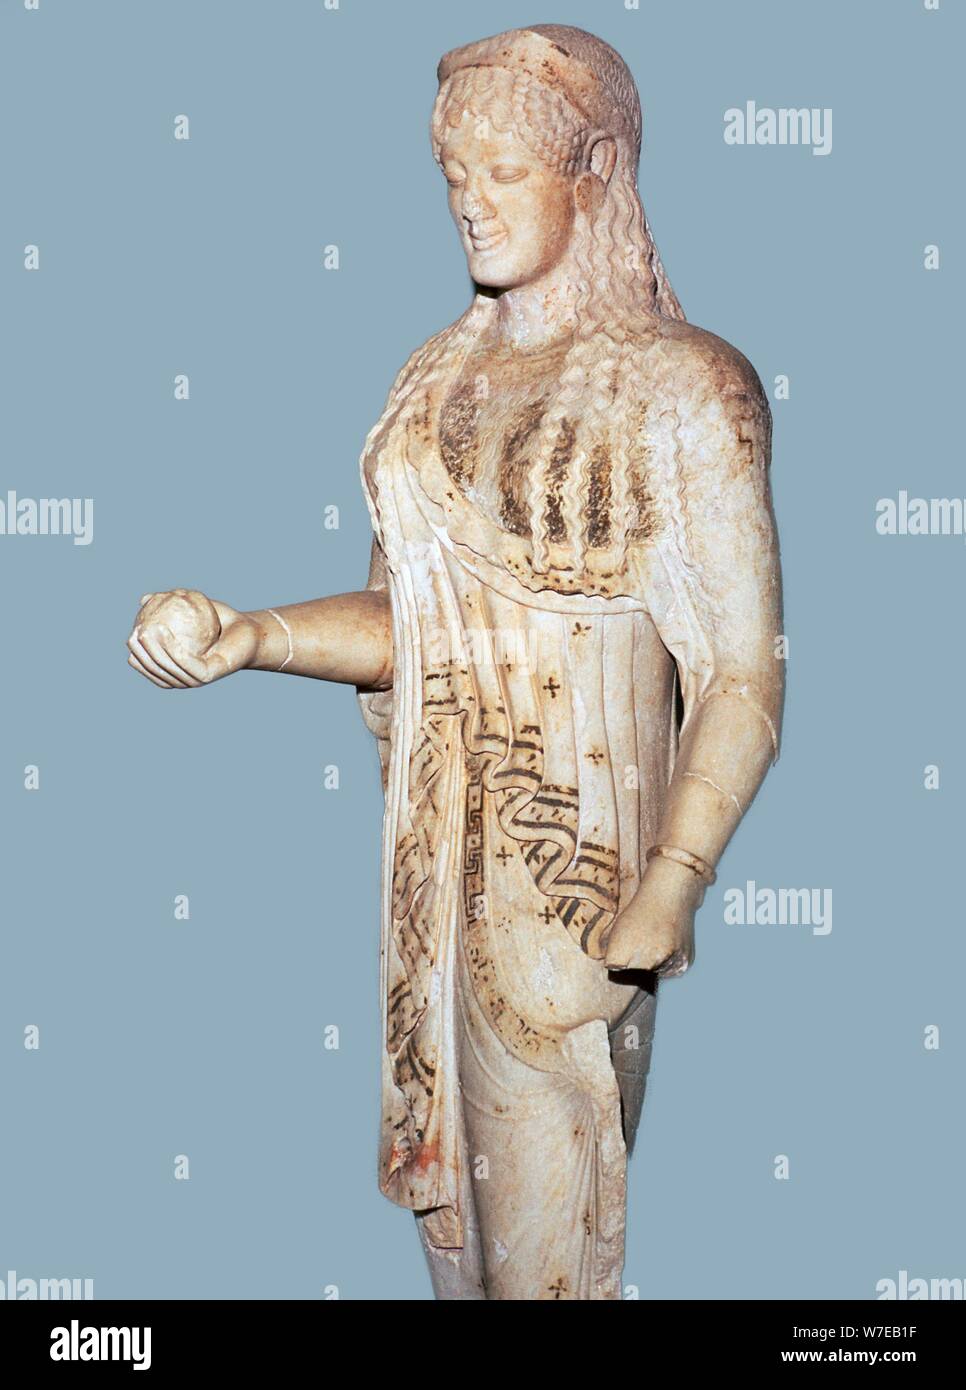 Statua greca di Kore dall'Acropoli, del V secolo A.C. Artista: sconosciuto Foto Stock